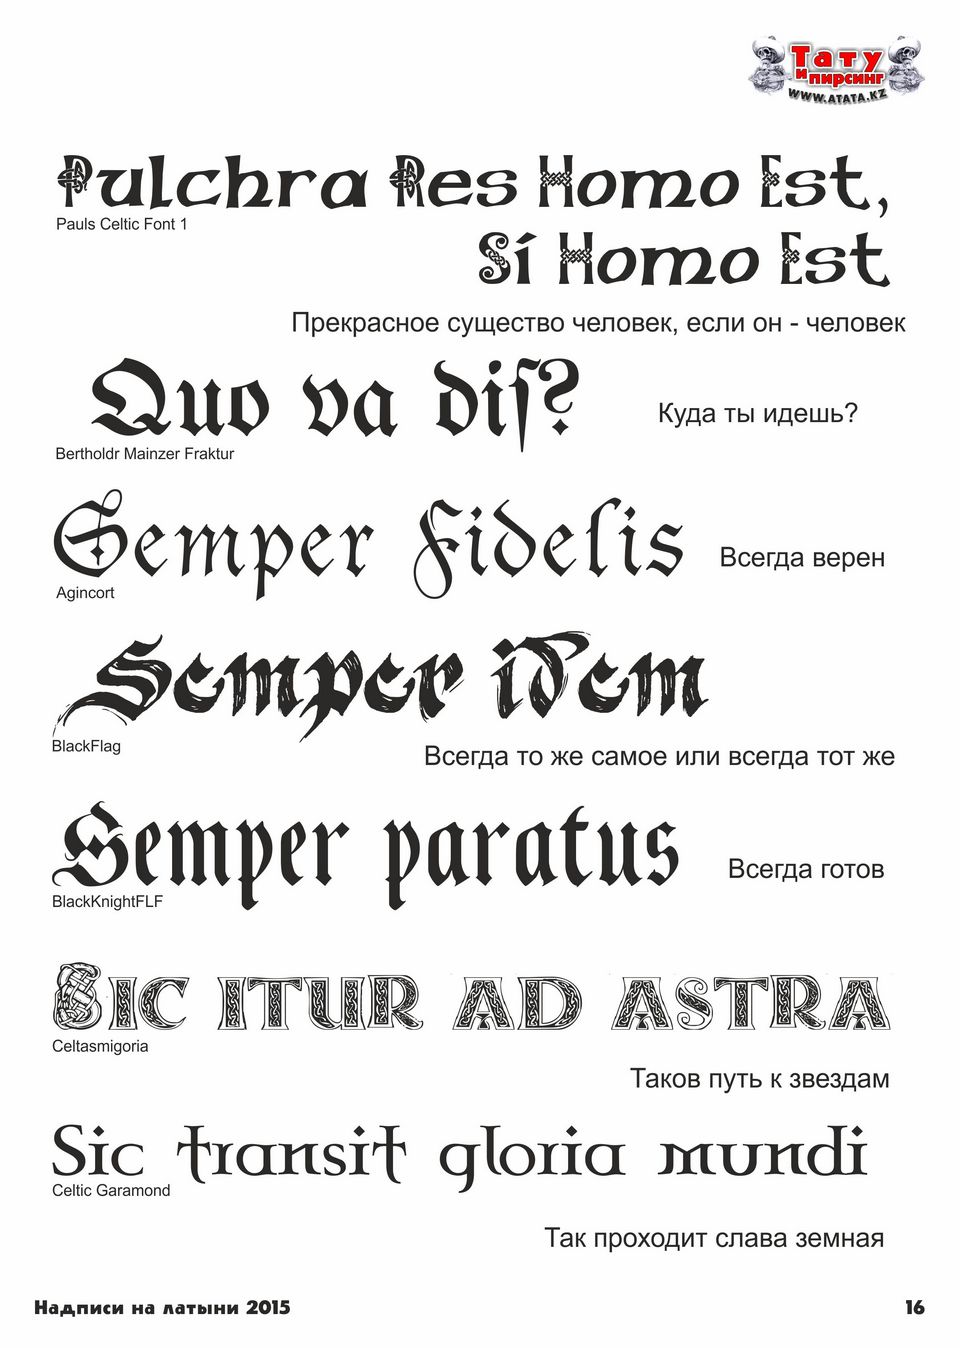 Тату надписи с переводом для мужчин на латинском